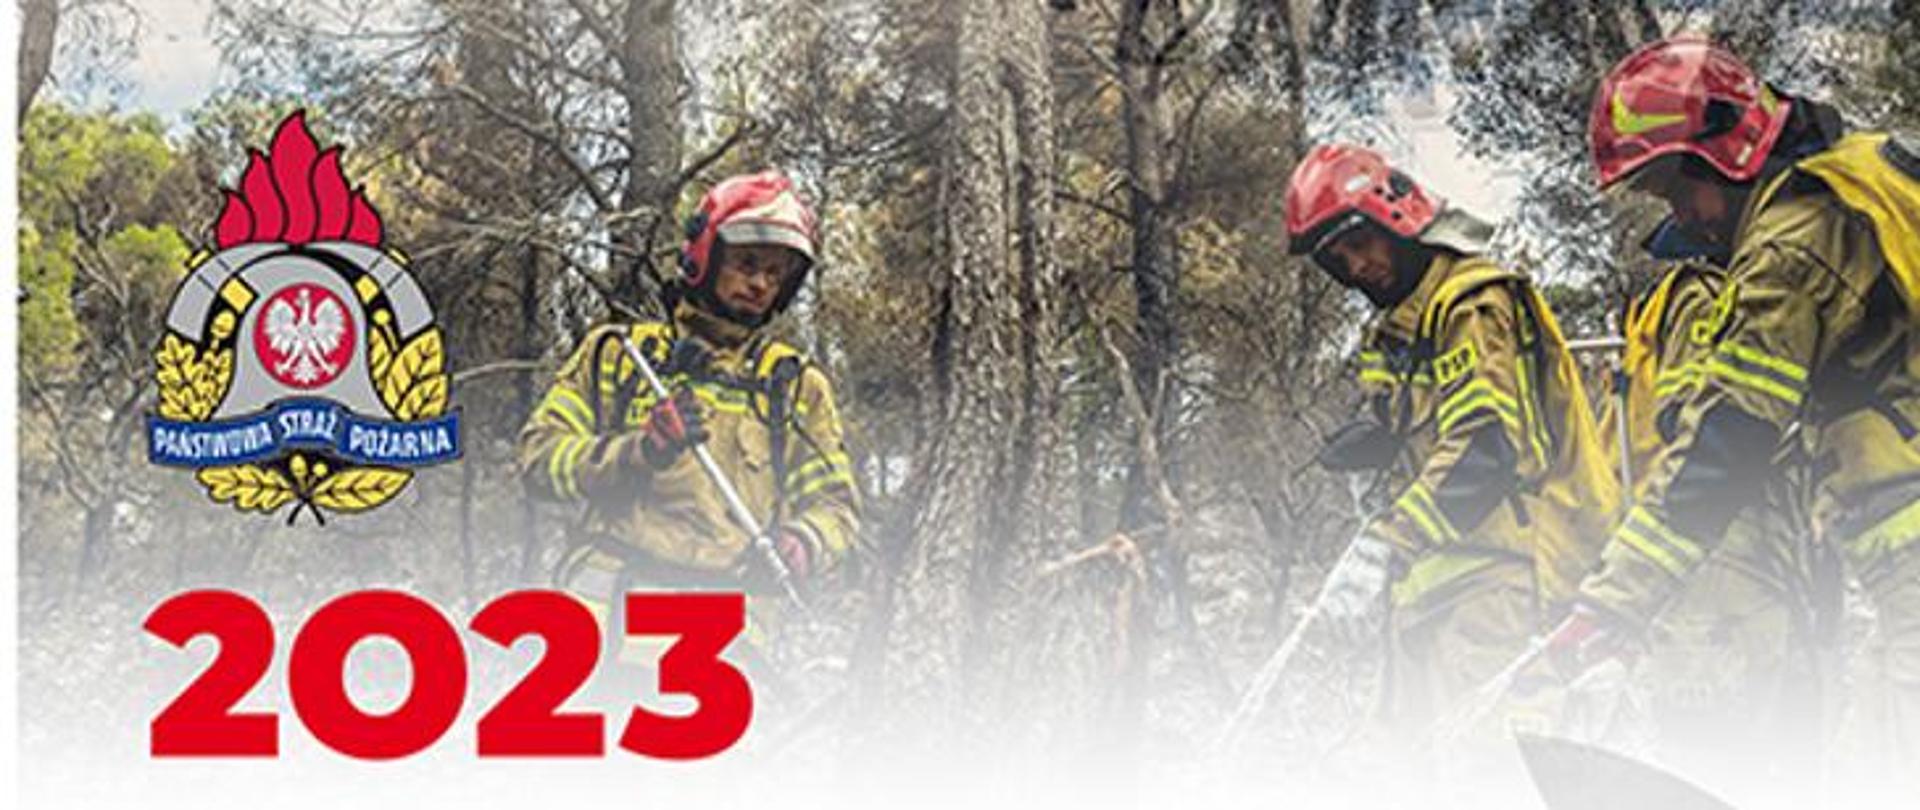 Strażacy w ubraniu specjalnym gaszący pożar, po lewej stronie logo PSP oraz napis 2023